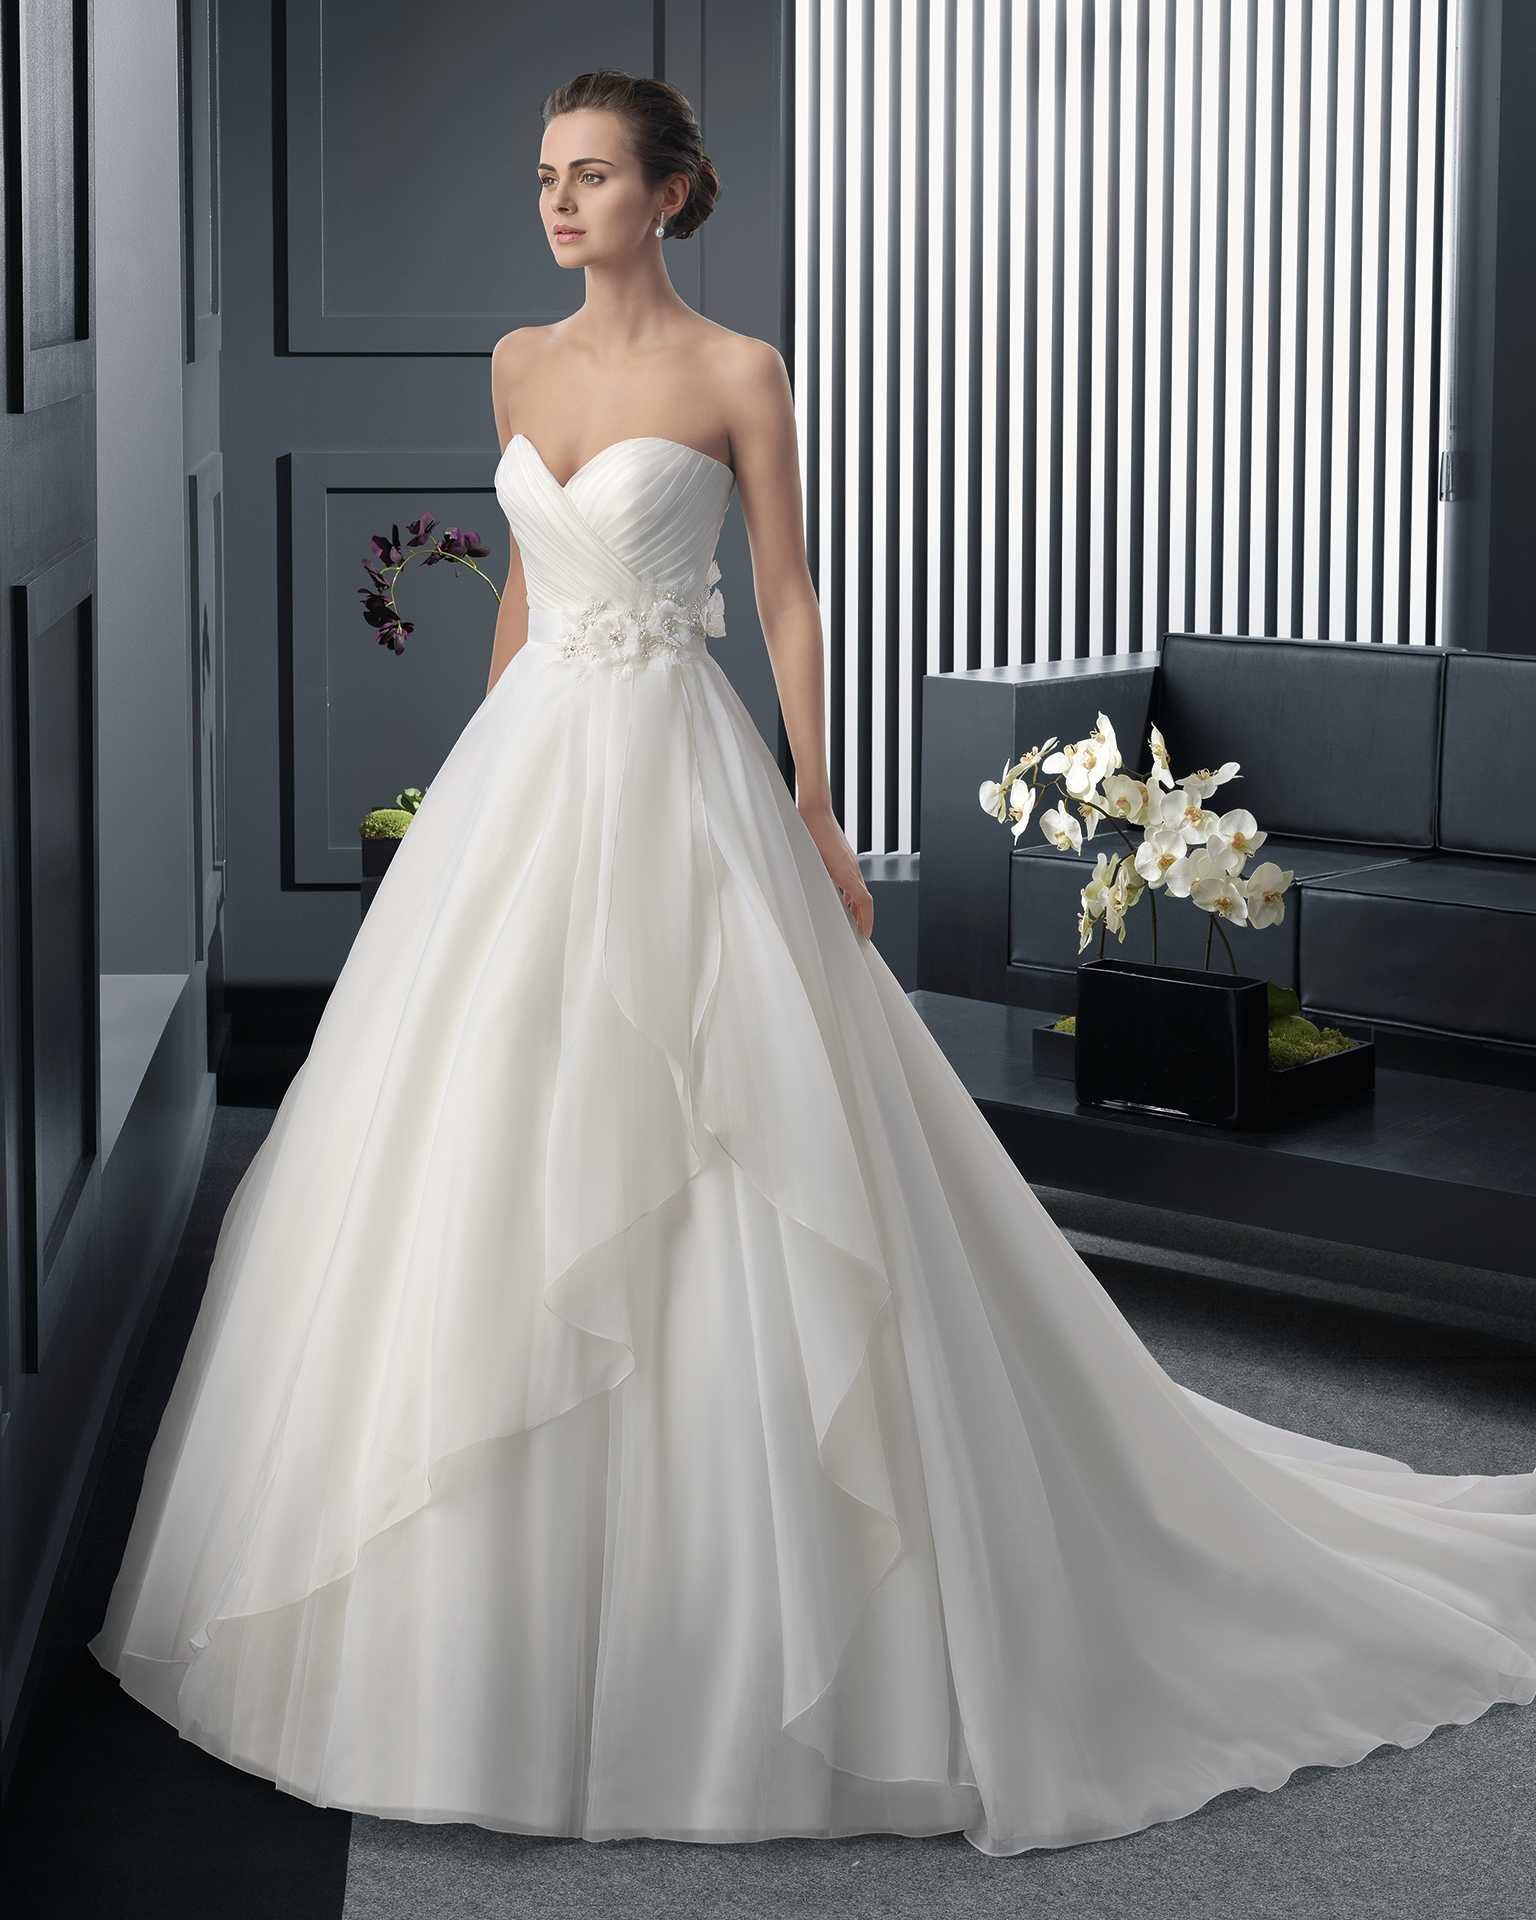 Свадебный костюм для невесты: стильно и модно